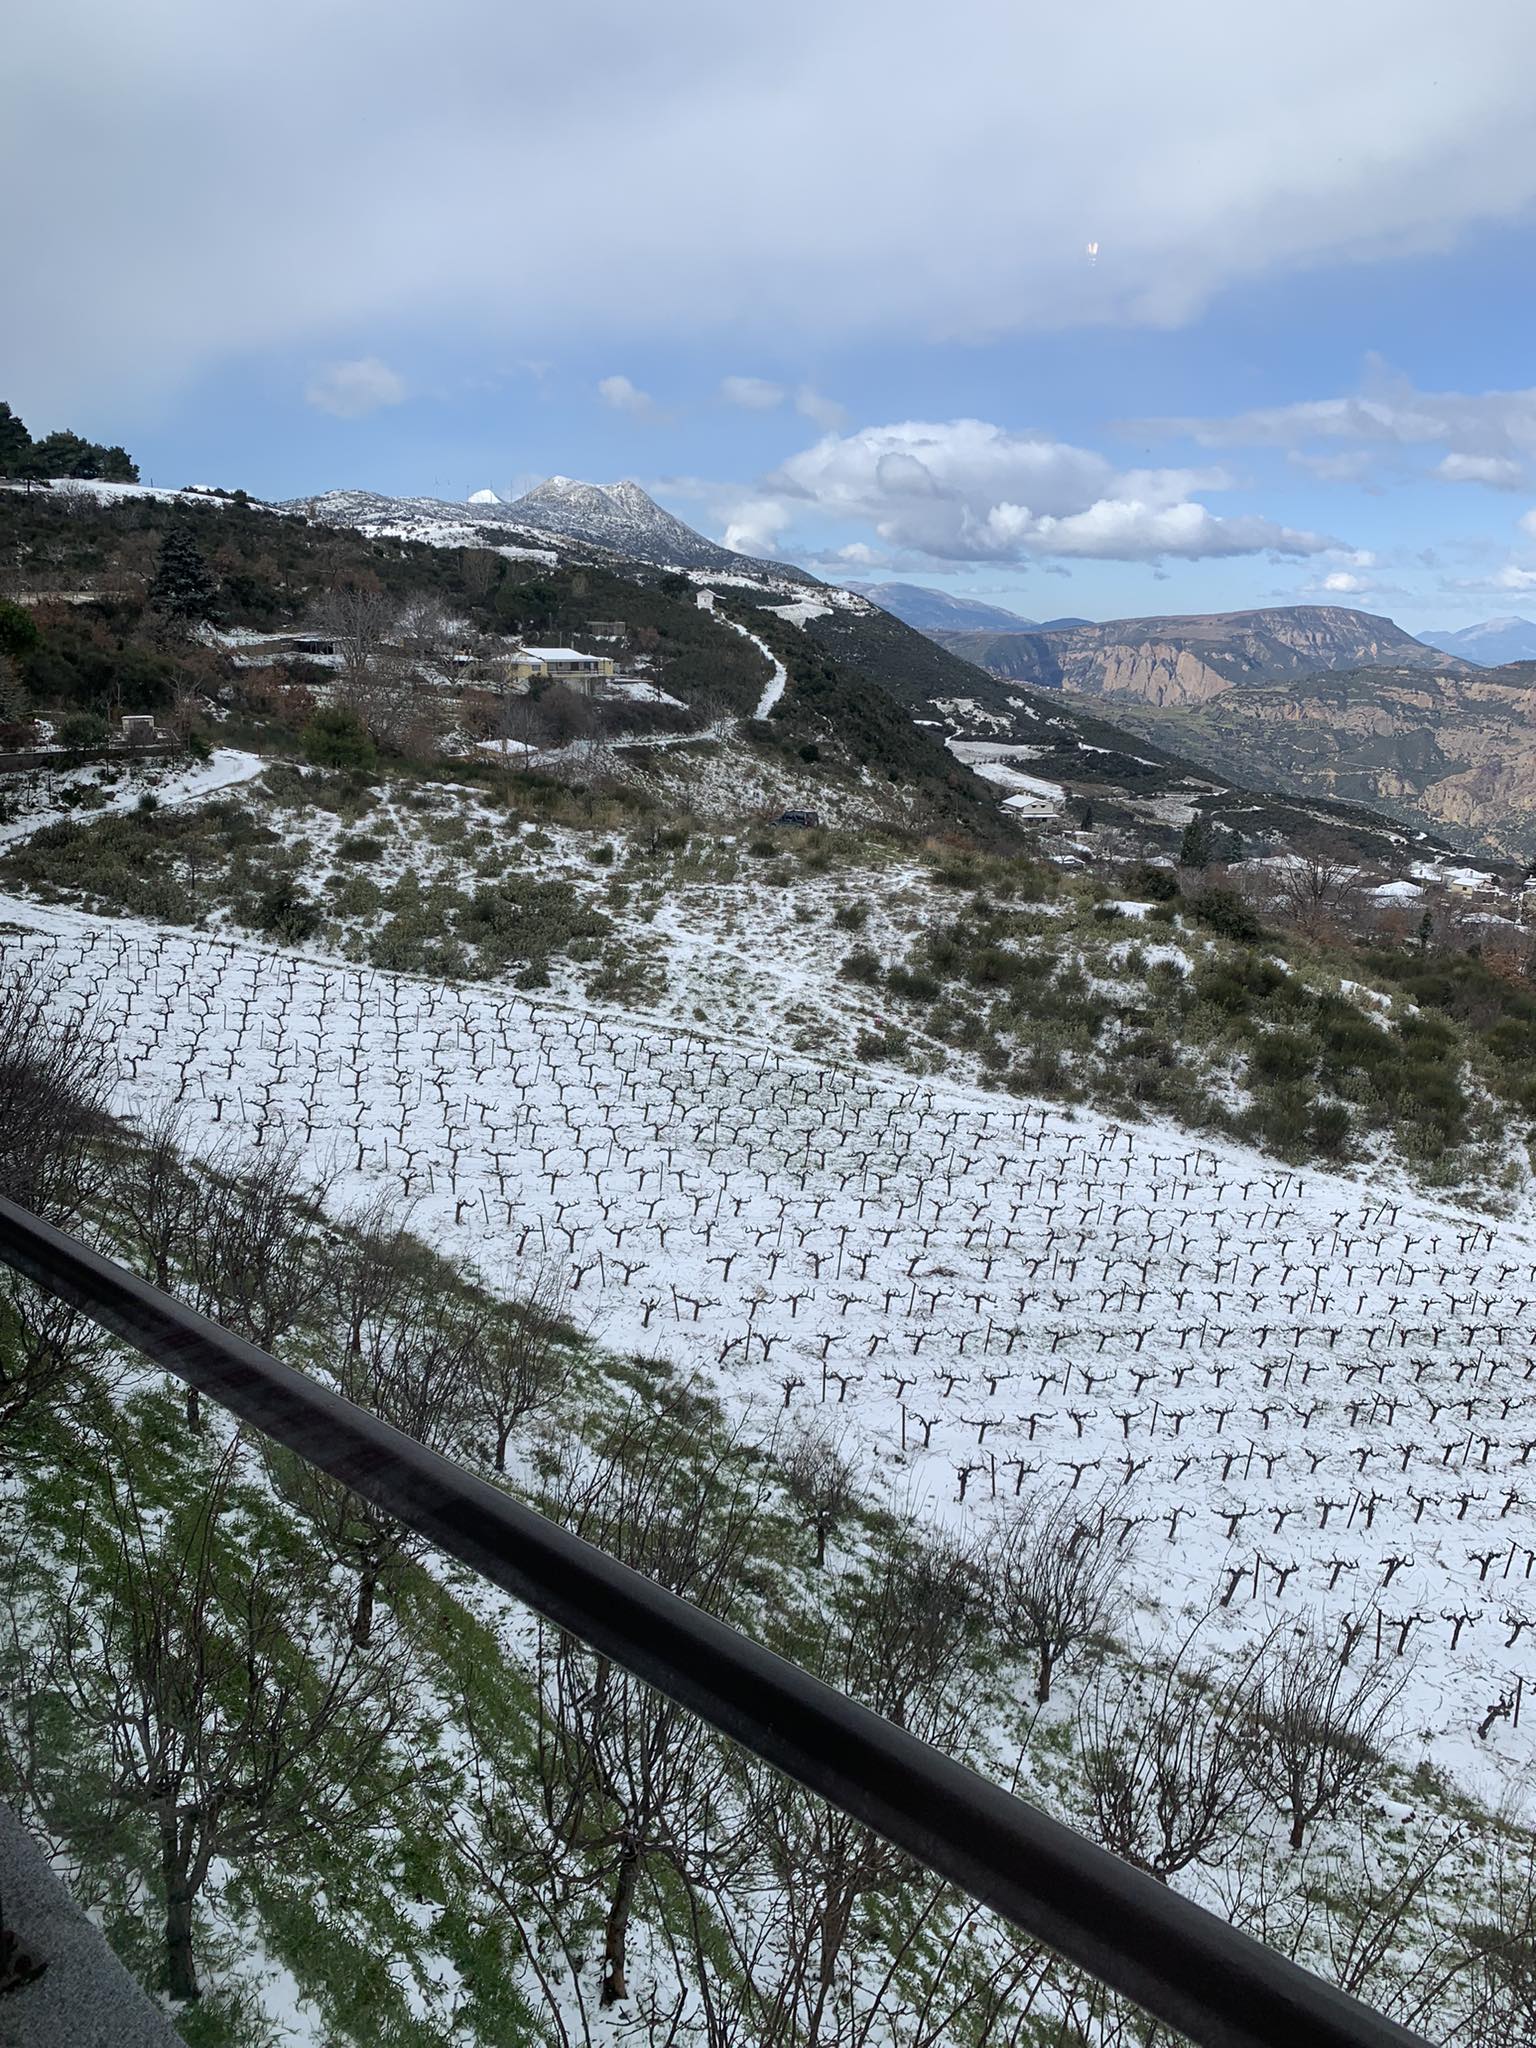 Κακοκαιρία «Avgi»: Σε ποιες περιοχές της Δυτικής Ελλάδας χρειάζονται αλυσίδες λόγω χιονοπτώσεων και παγετού